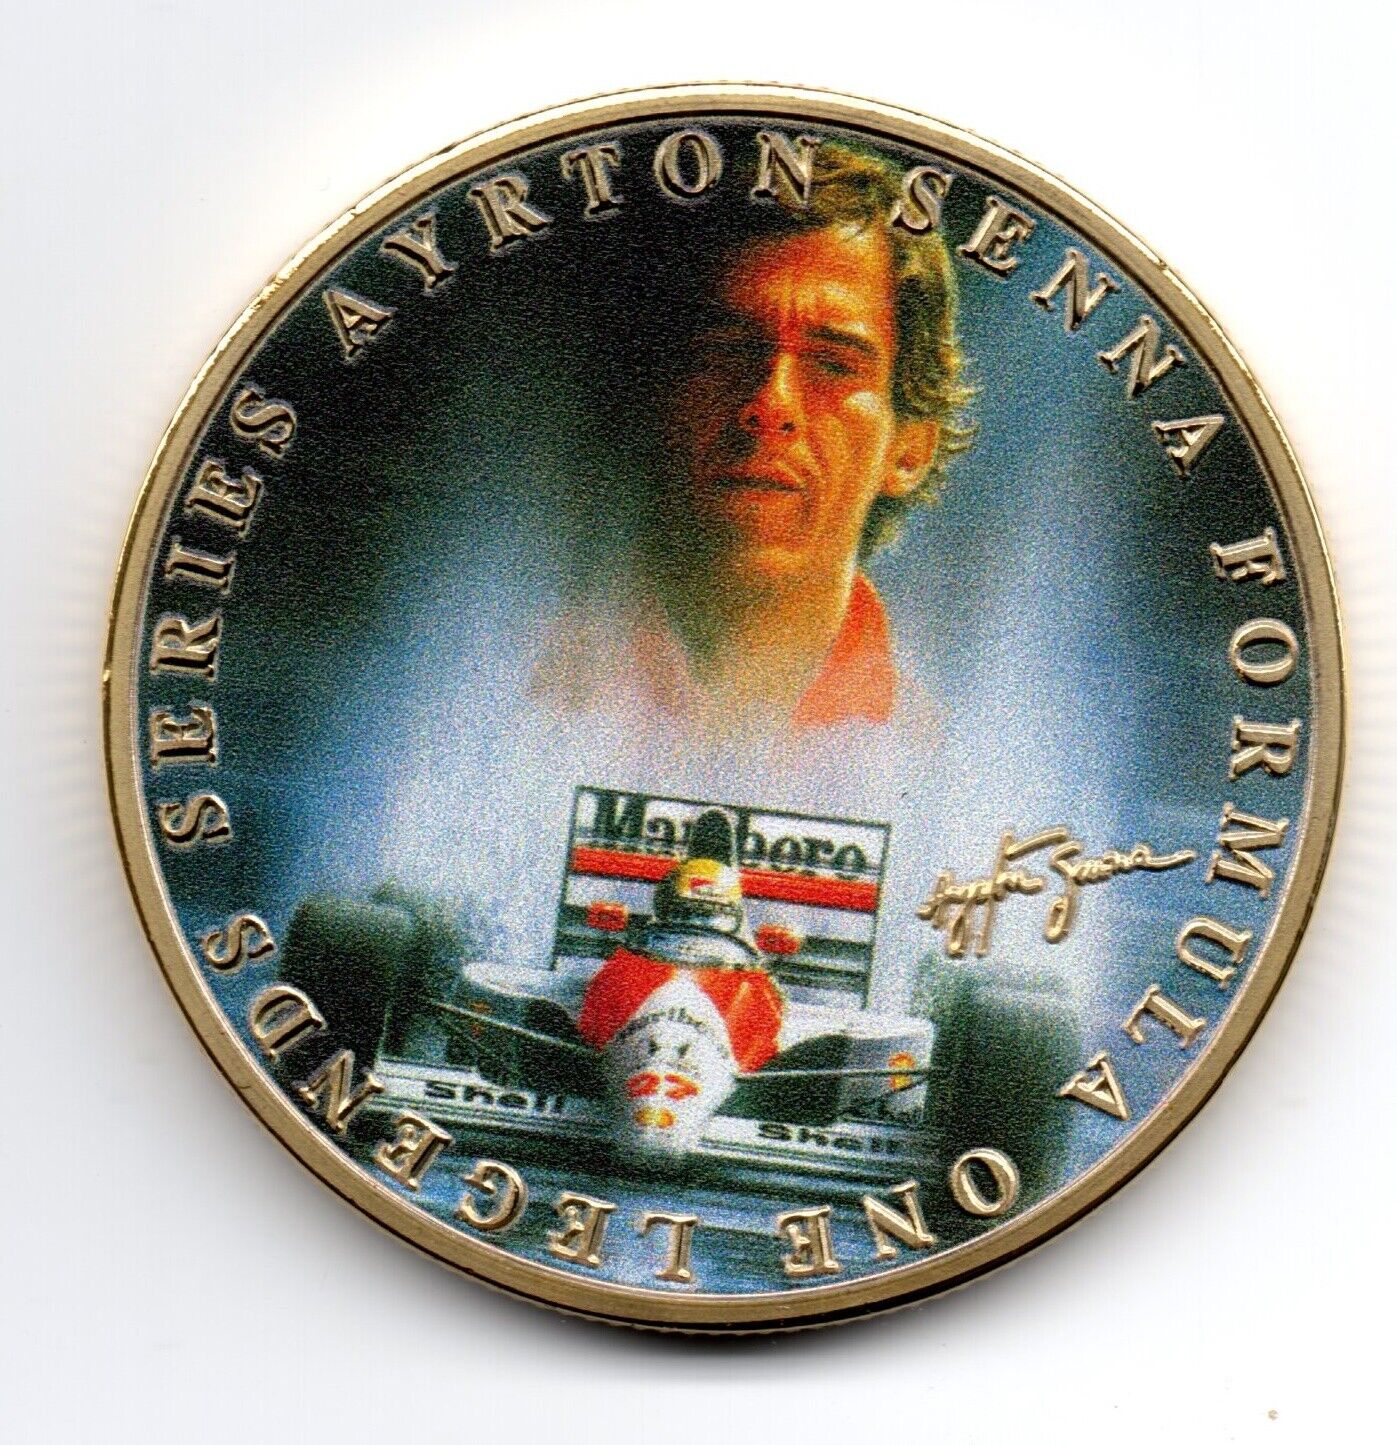 Ayrton Senna Lewis Hamilton Gold Coin Autographed Formula 1 Motor Car Racing UK